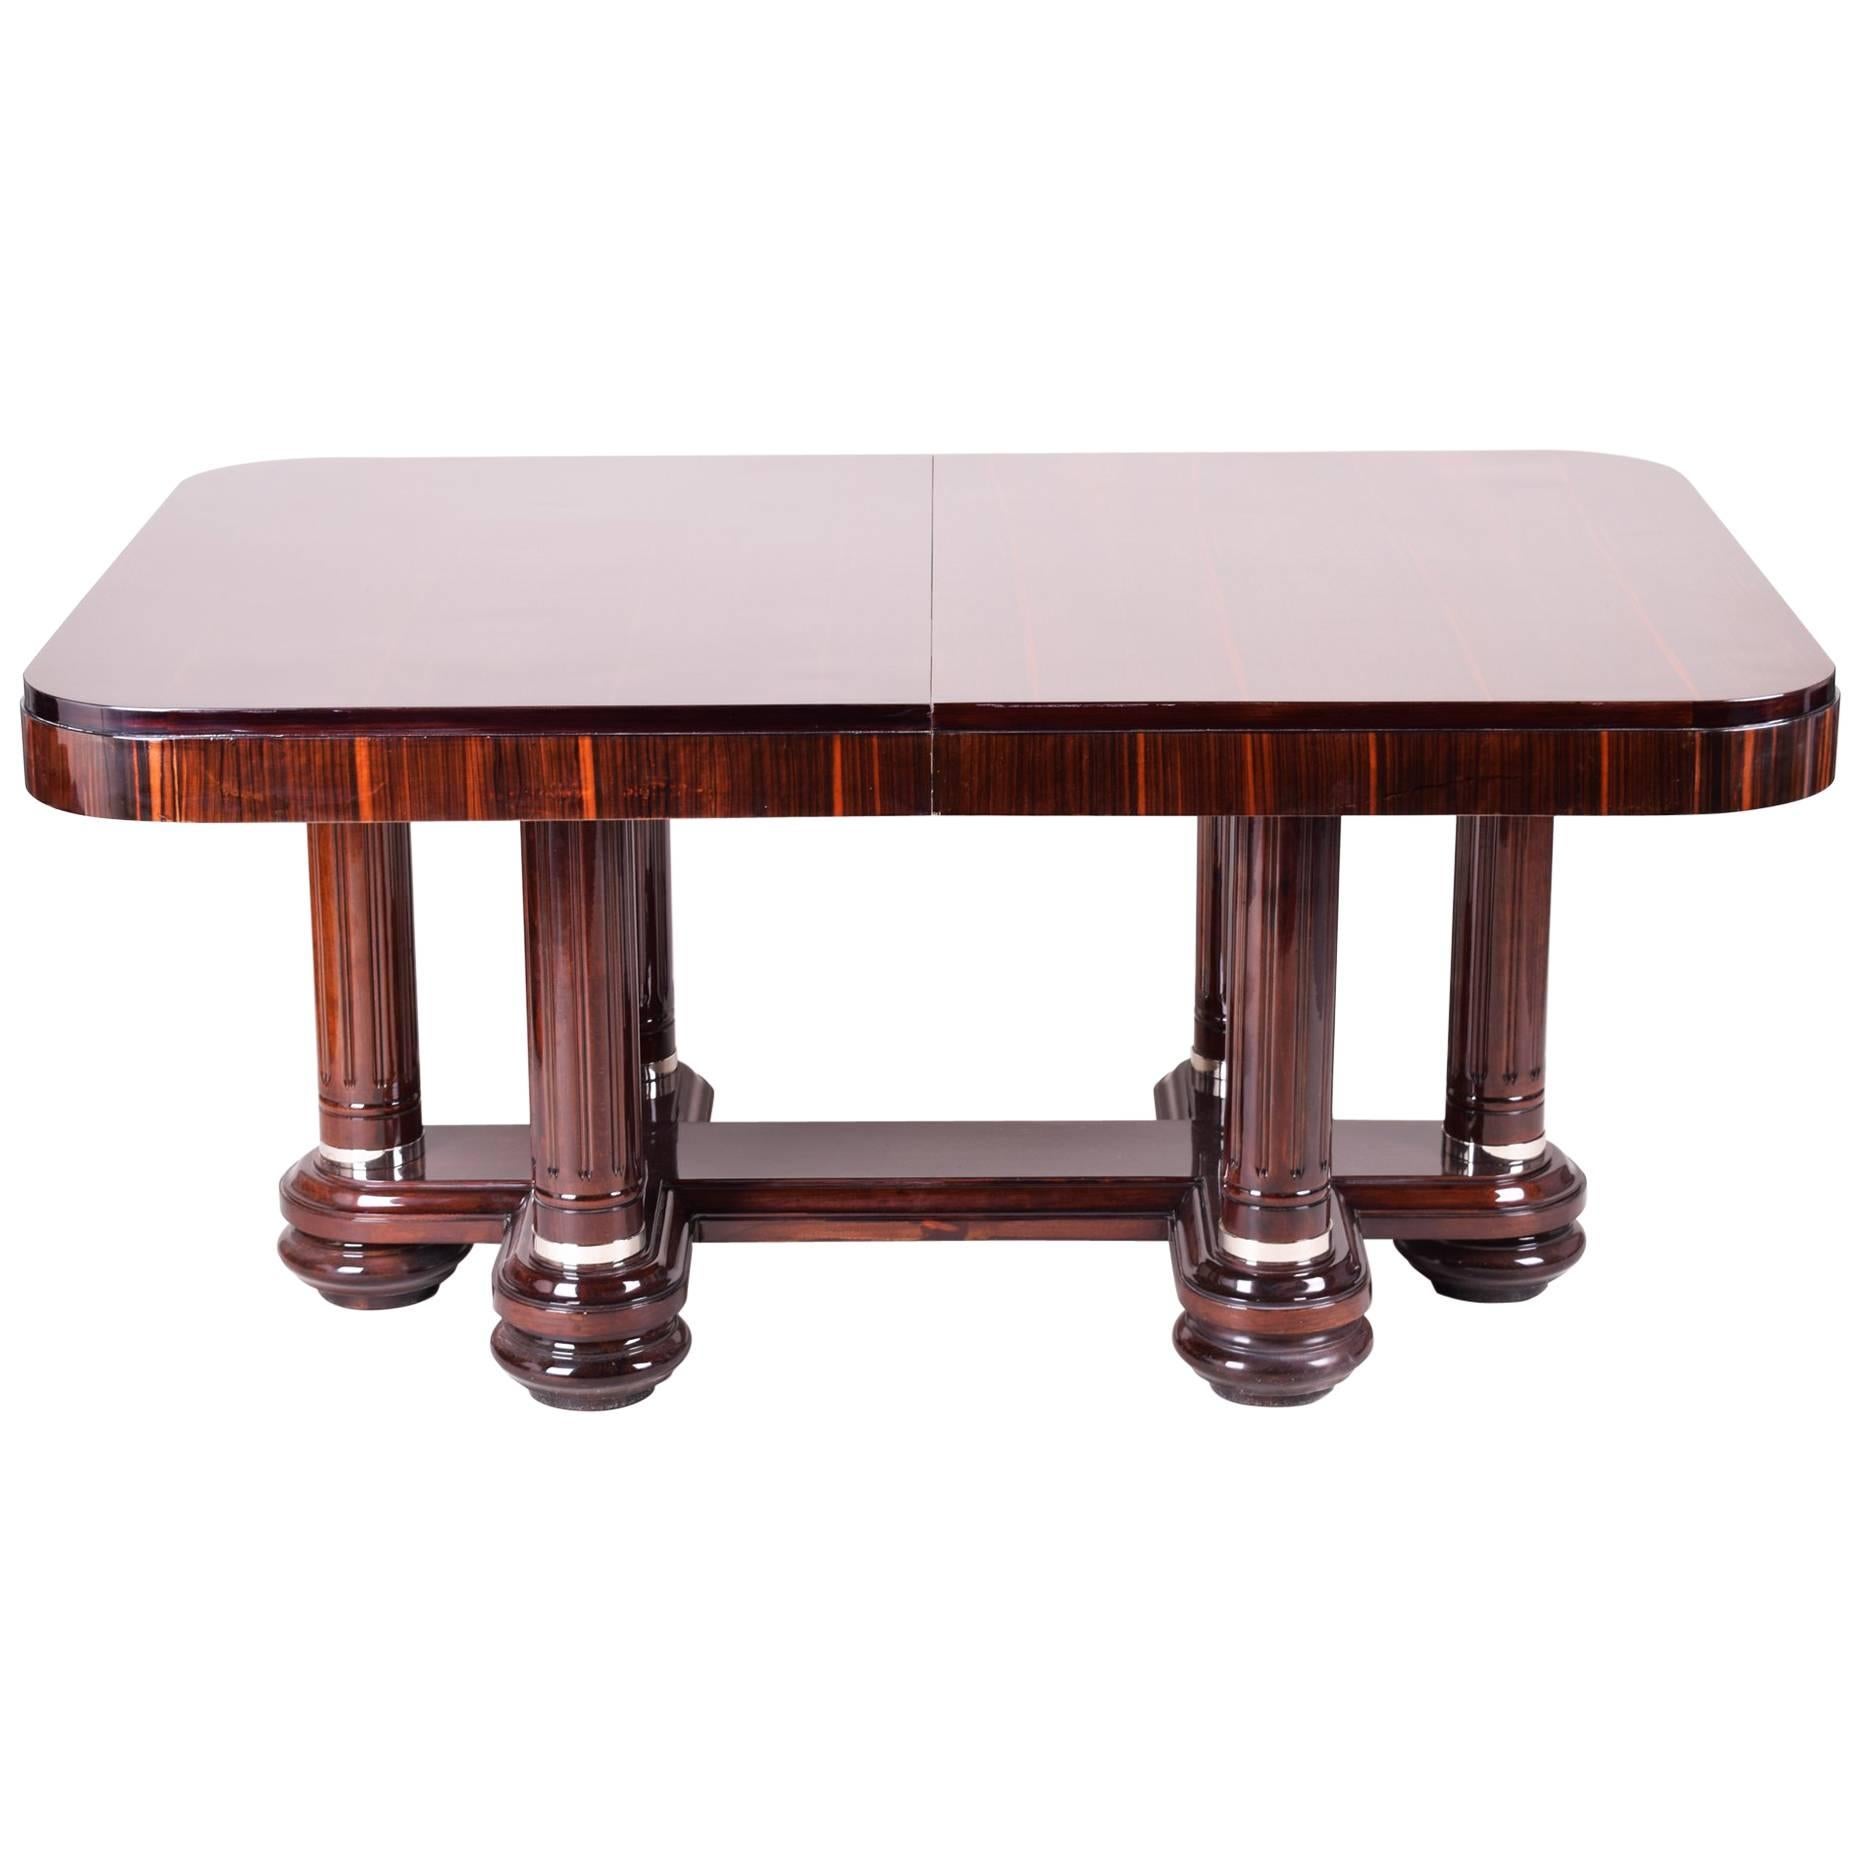 Unique Art Deco large Table